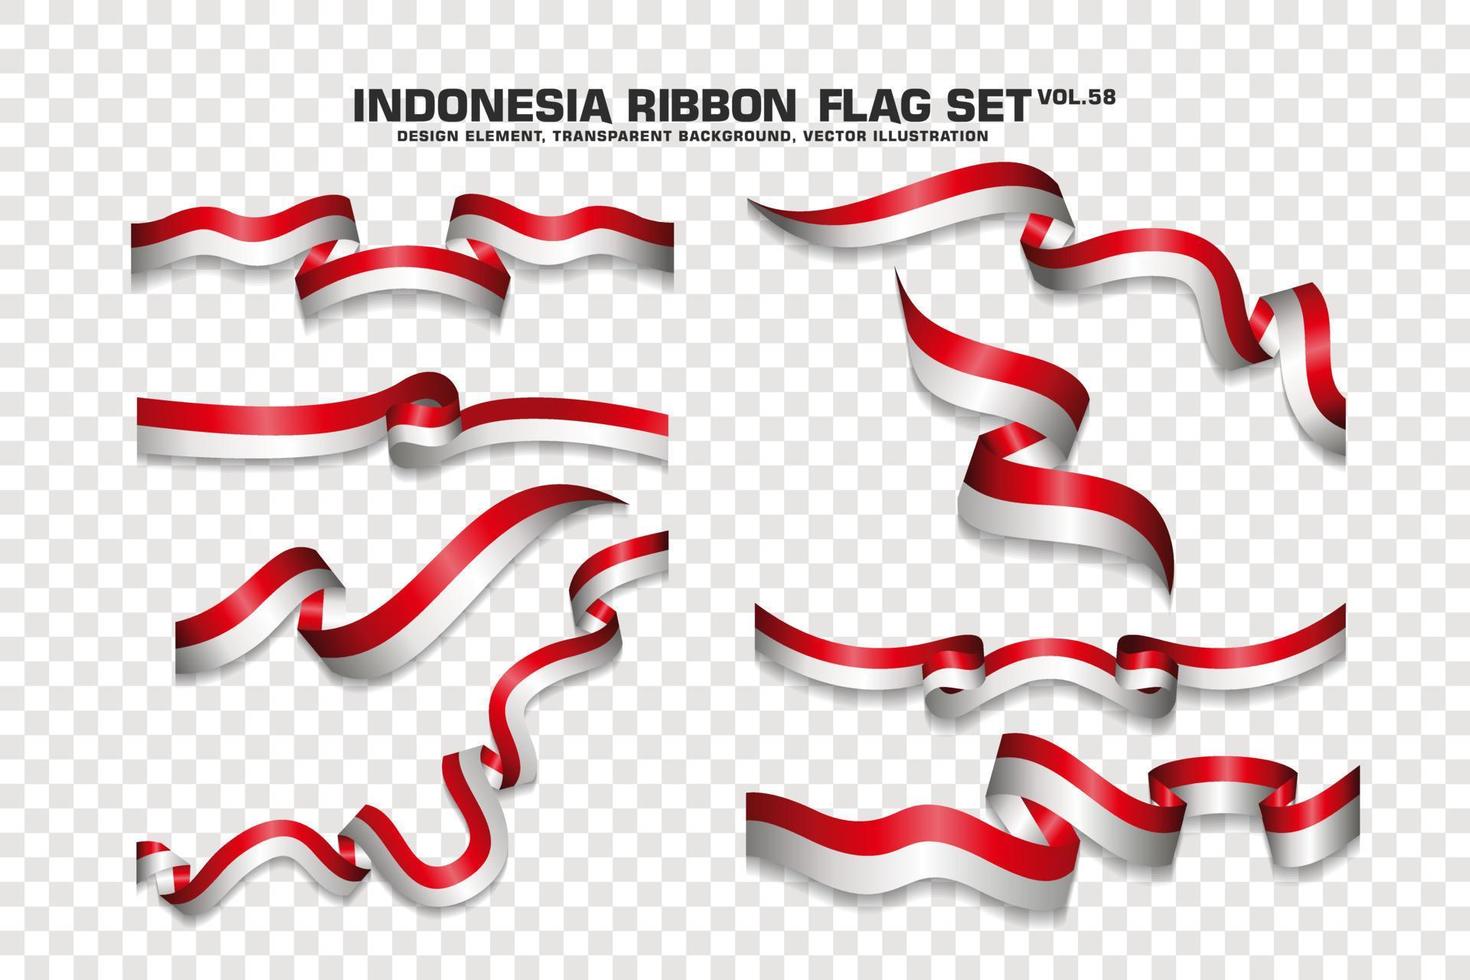 ensemble de drapeaux de ruban indonésien, conception d'éléments, style 3d. illustration vectorielle vecteur